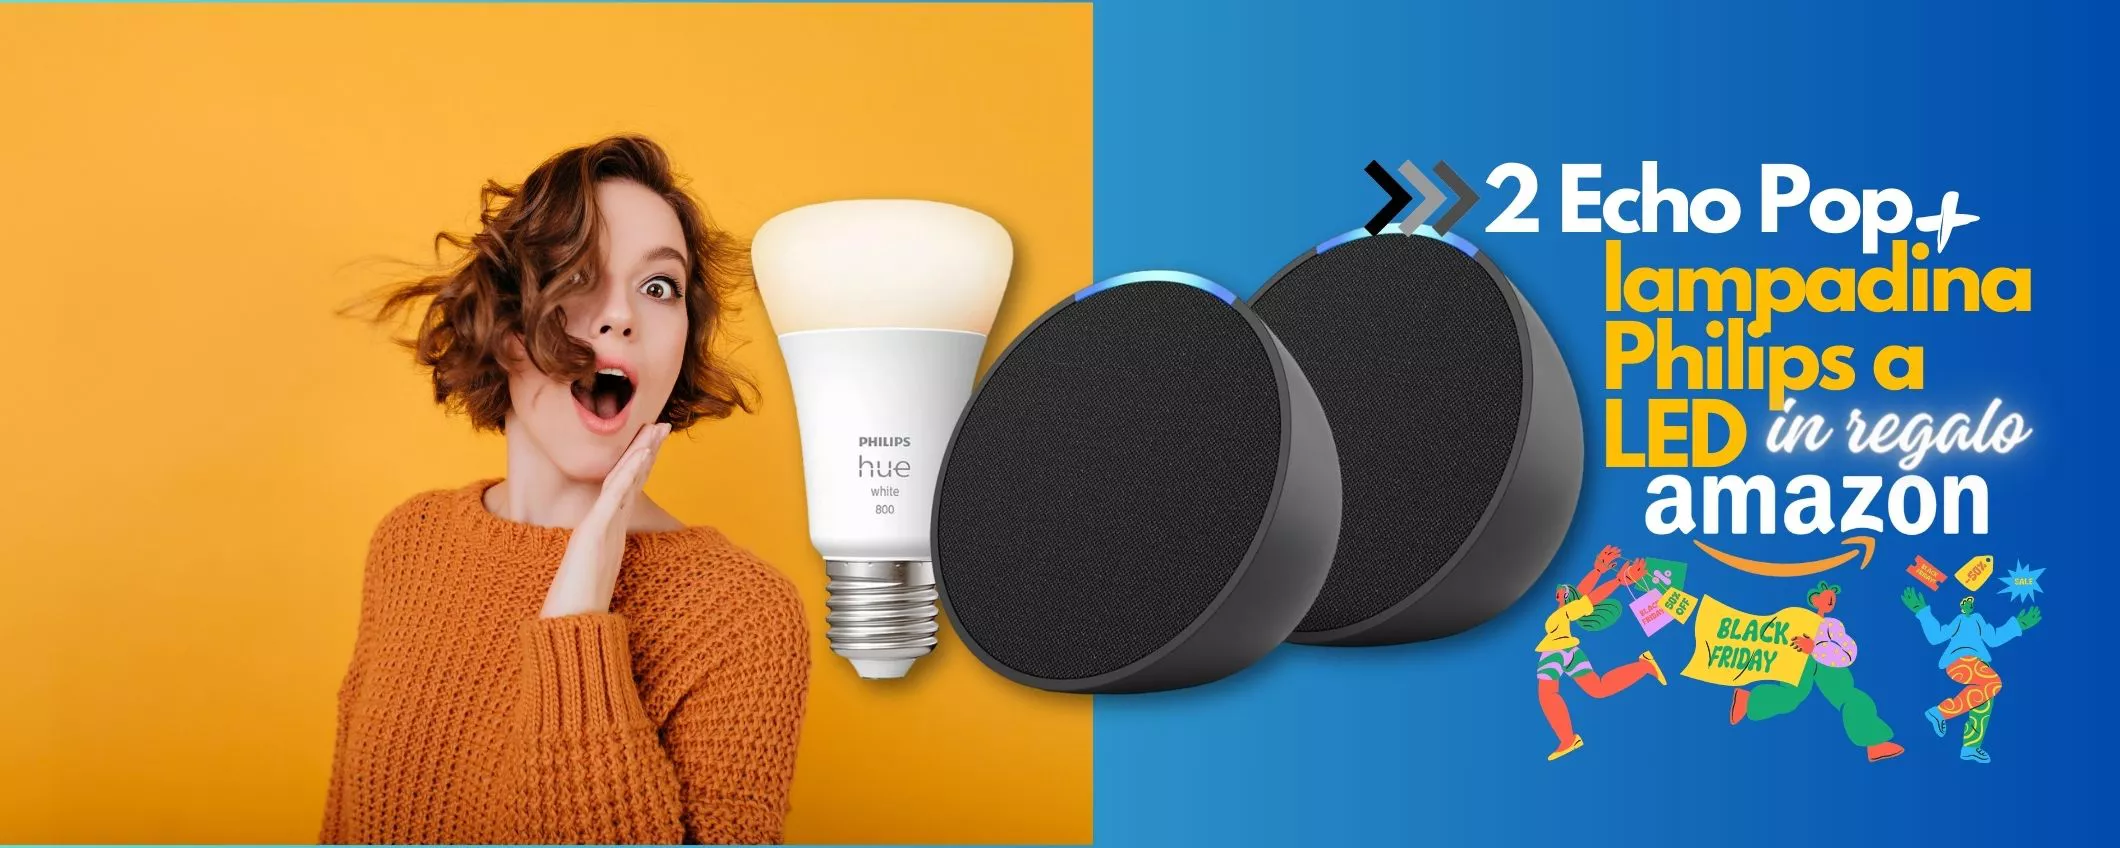 Echo Pop + lampadina LED Philips con Alexa a 39€: ESCLUSIVA Black Friday Amazon